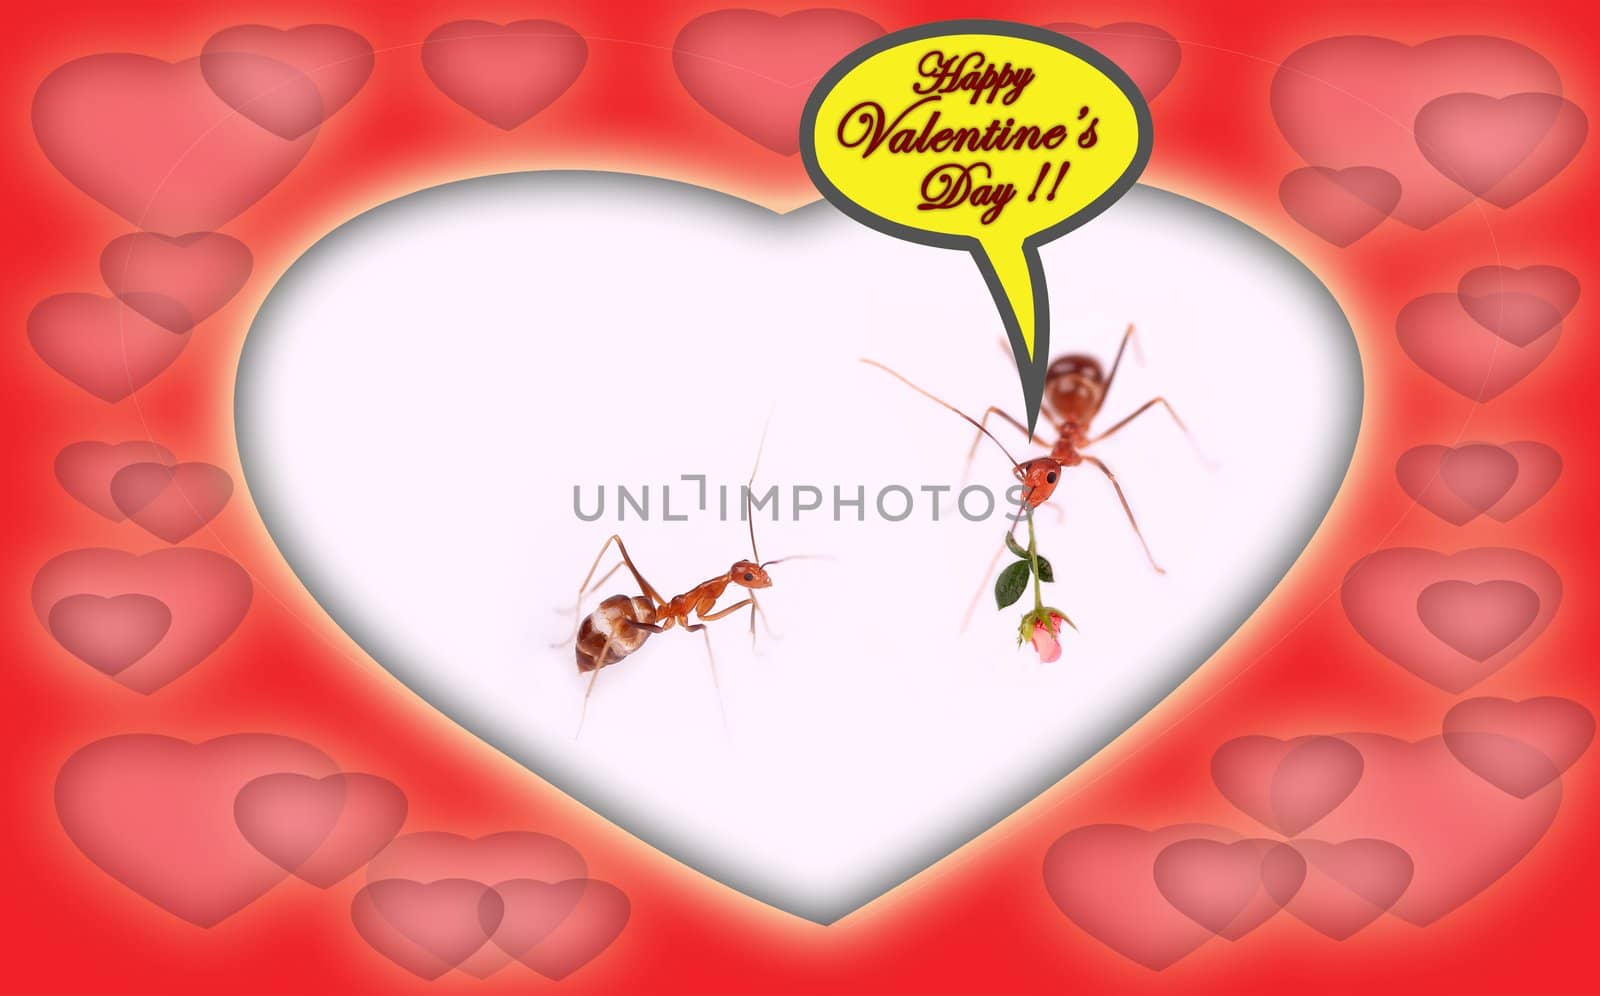 Happy valentine's day wish by mnsanthoshkumar